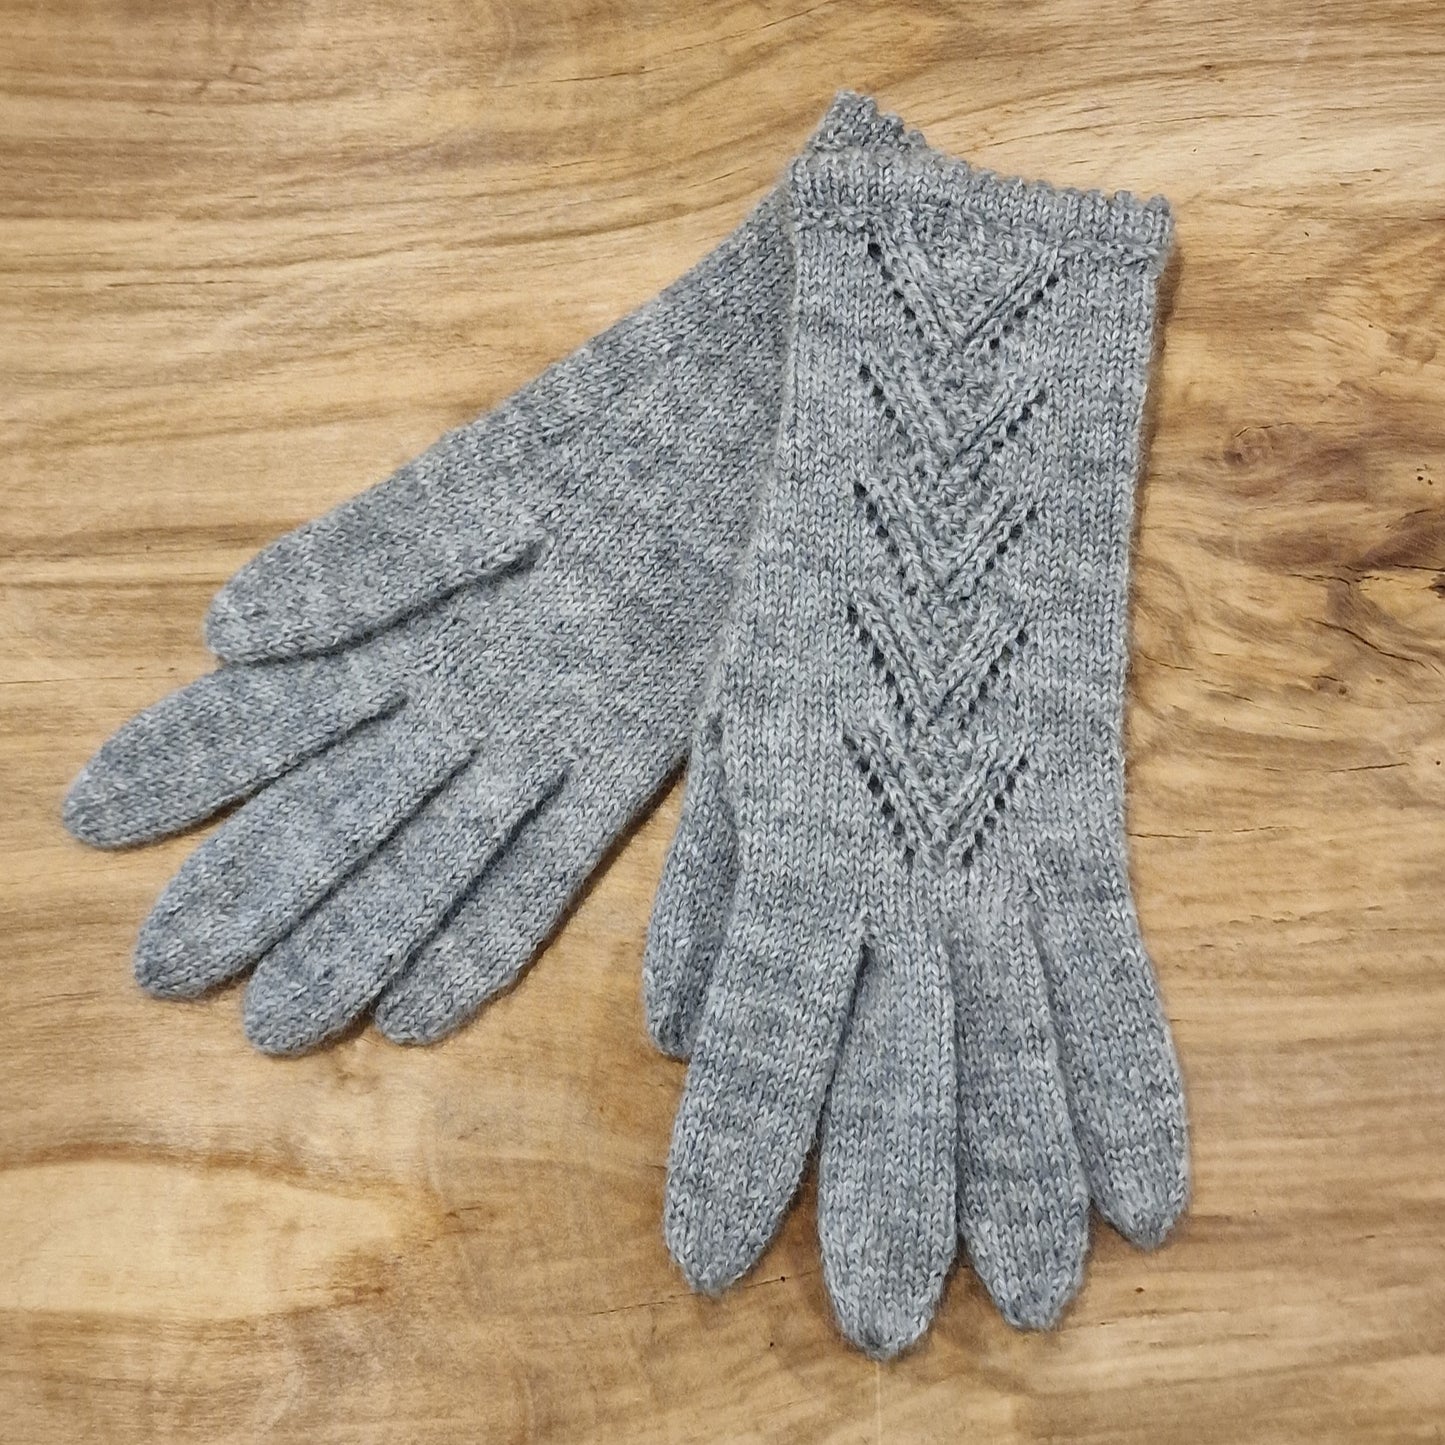 Hand-knitted gray mittens (INVA 31)